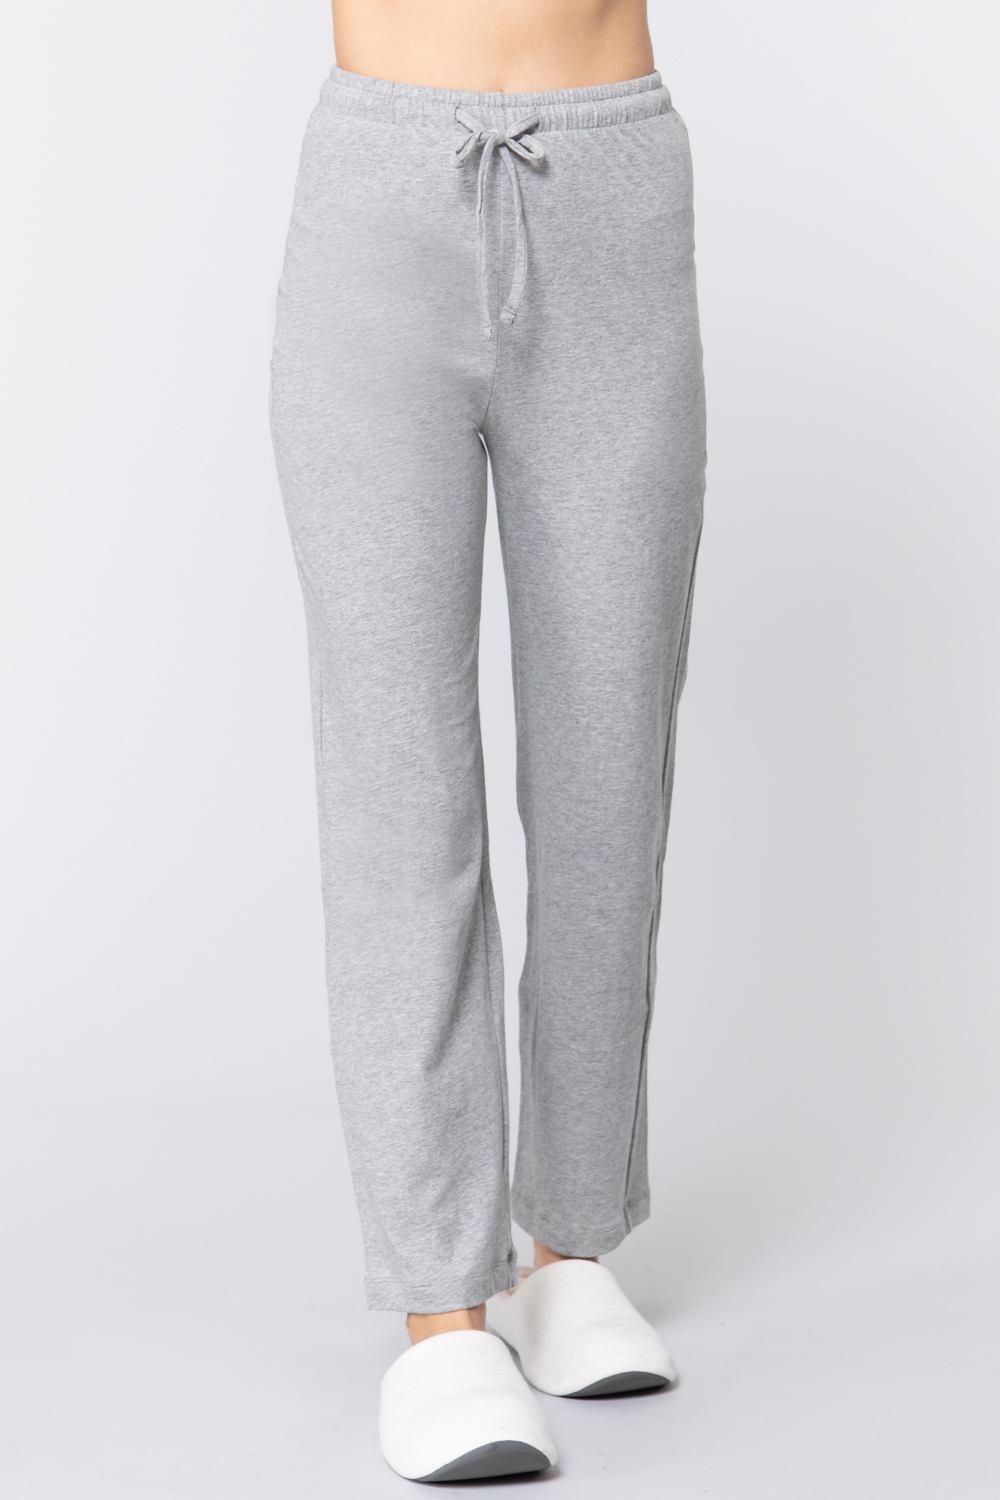 Solid Cotton Pajama Pants Naughty Smile Fashion